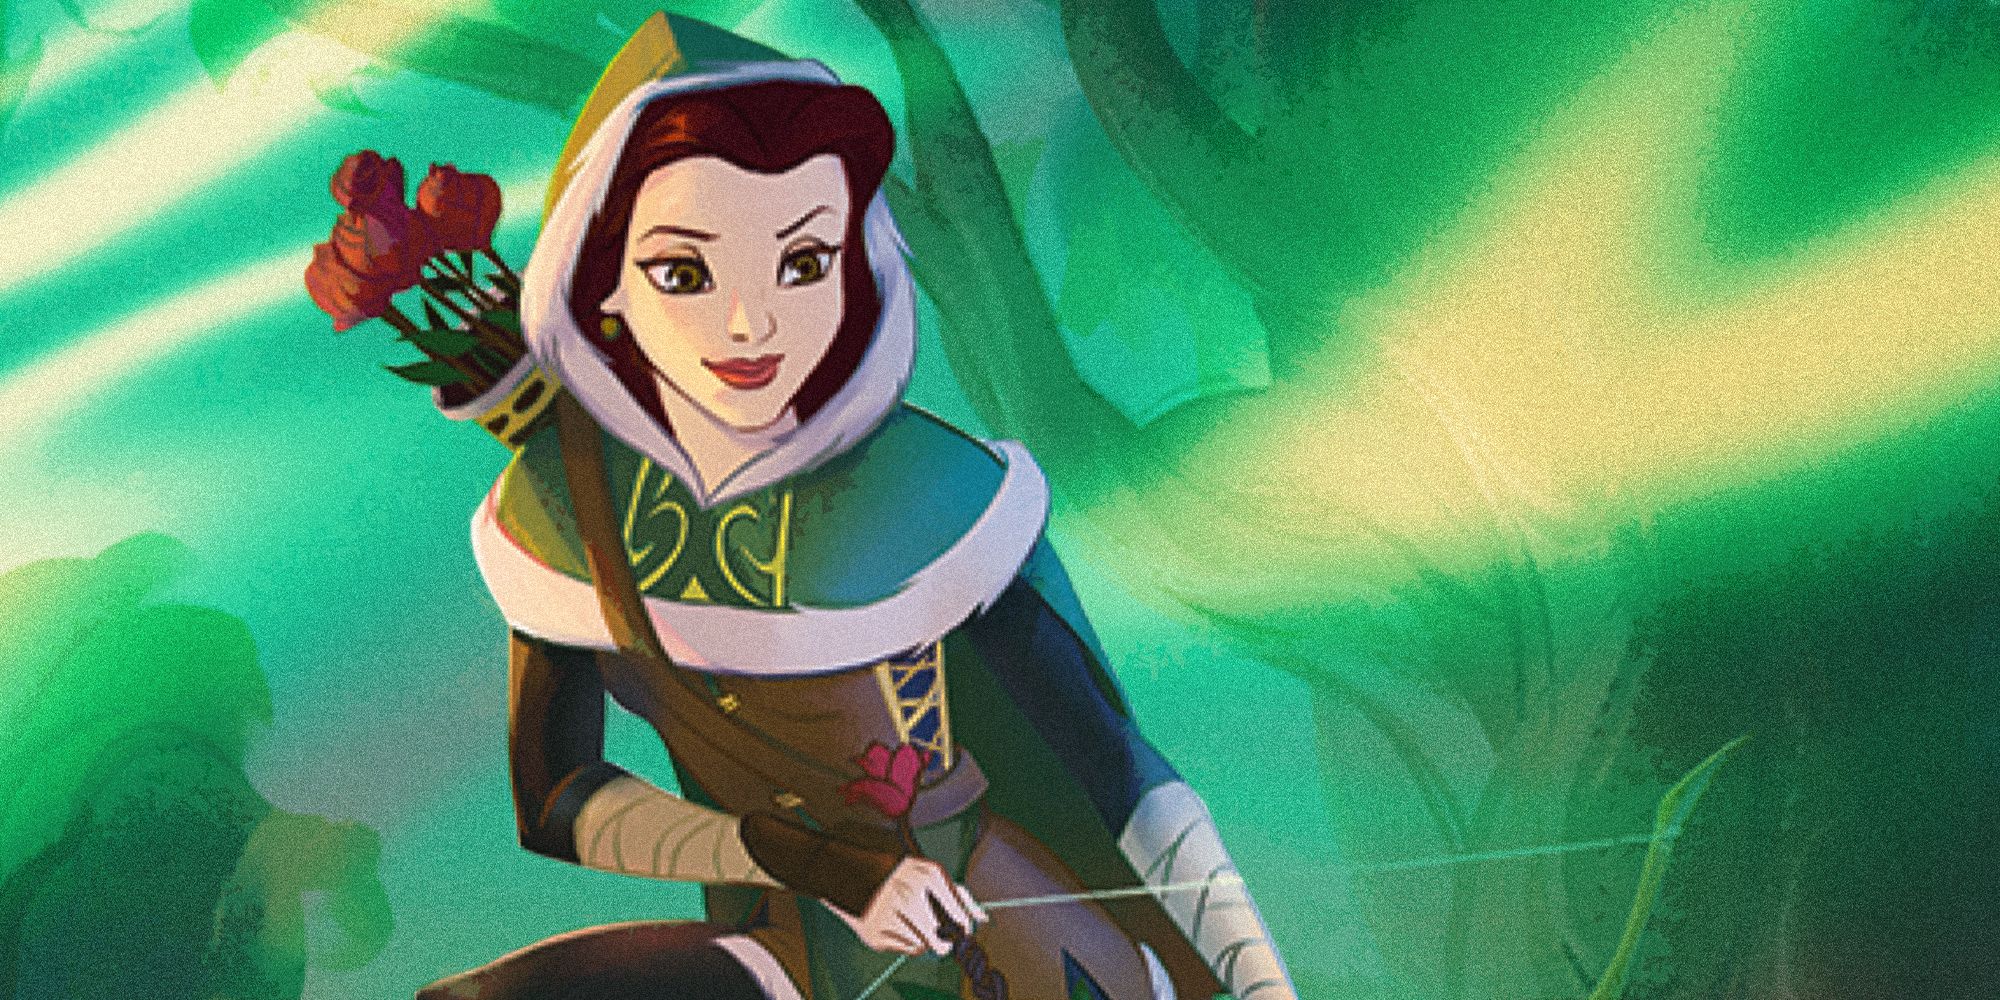 Belle, Hidden Archer from Disney Lorcana